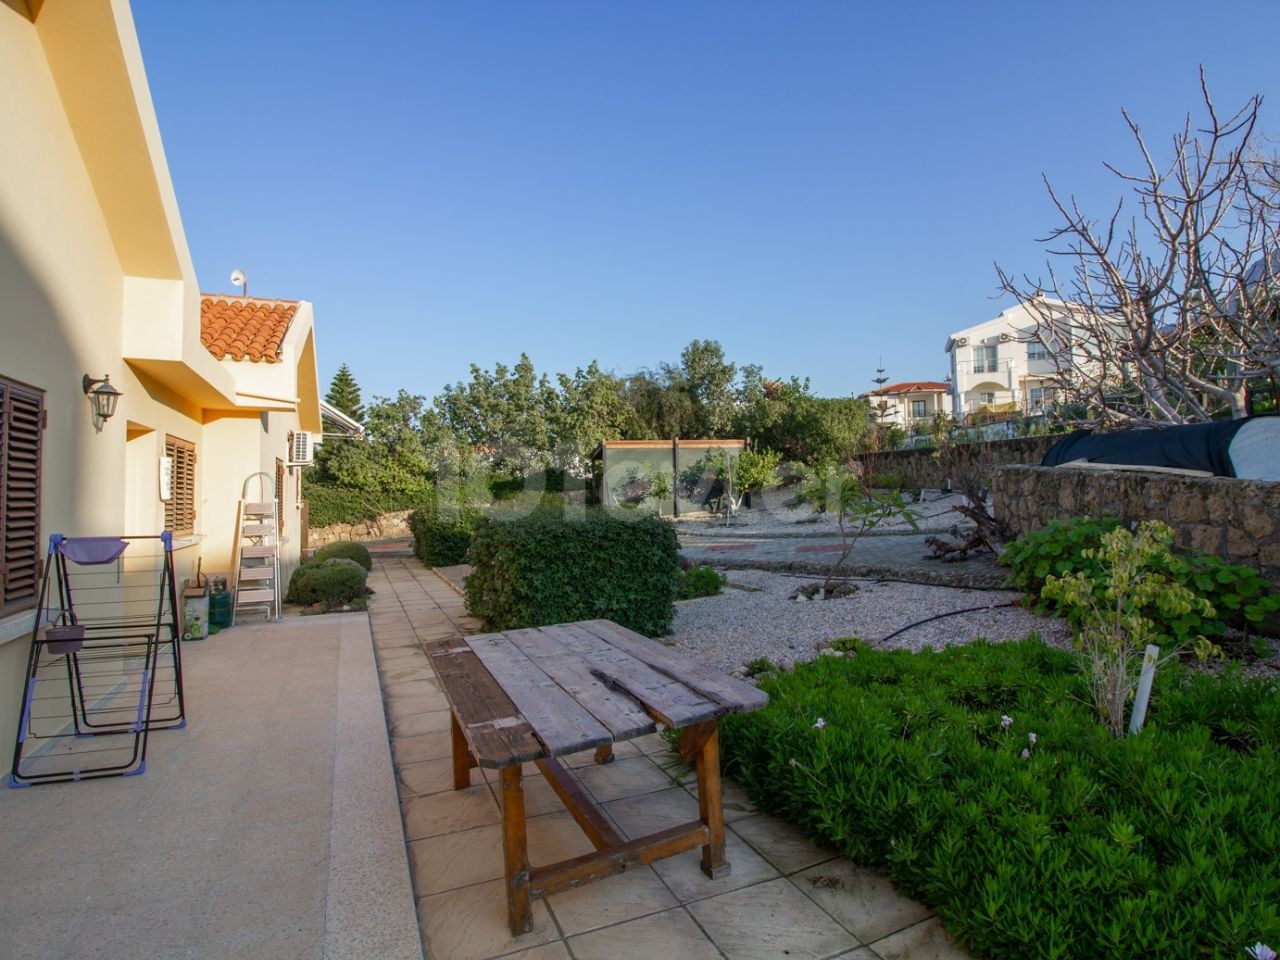 Seltene Gelegenheit zum Kauf dieser gut präsentierten 3-Schlafzimmer-Bungalow mit privatem Pool - in 1 Donum Land in diesem beliebten zypriotischen Dorf Catalkoy gesetzt